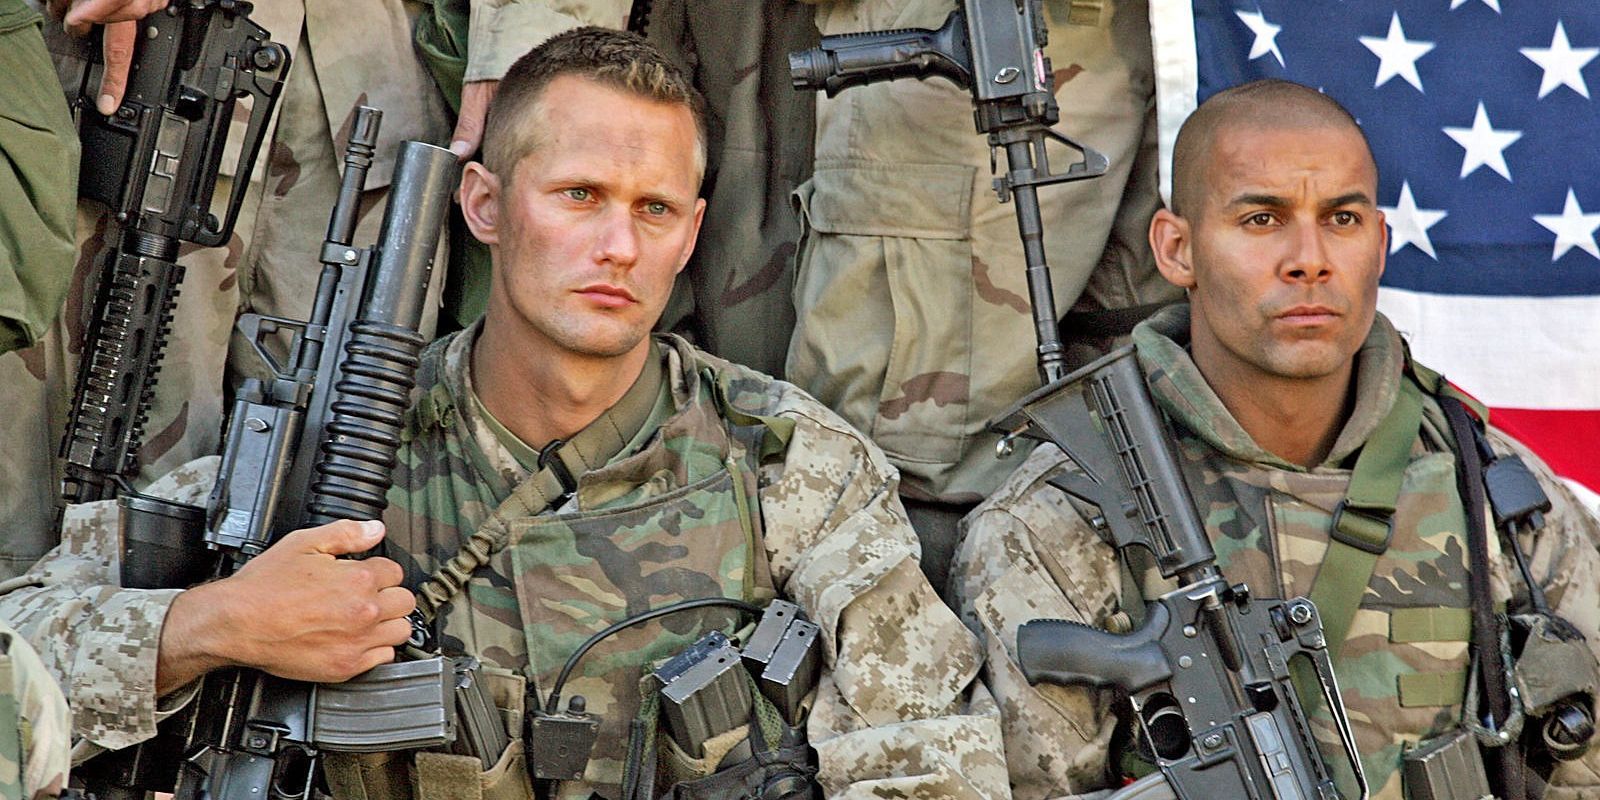 Alexander Skarsgård in military uniform in Generation Kill